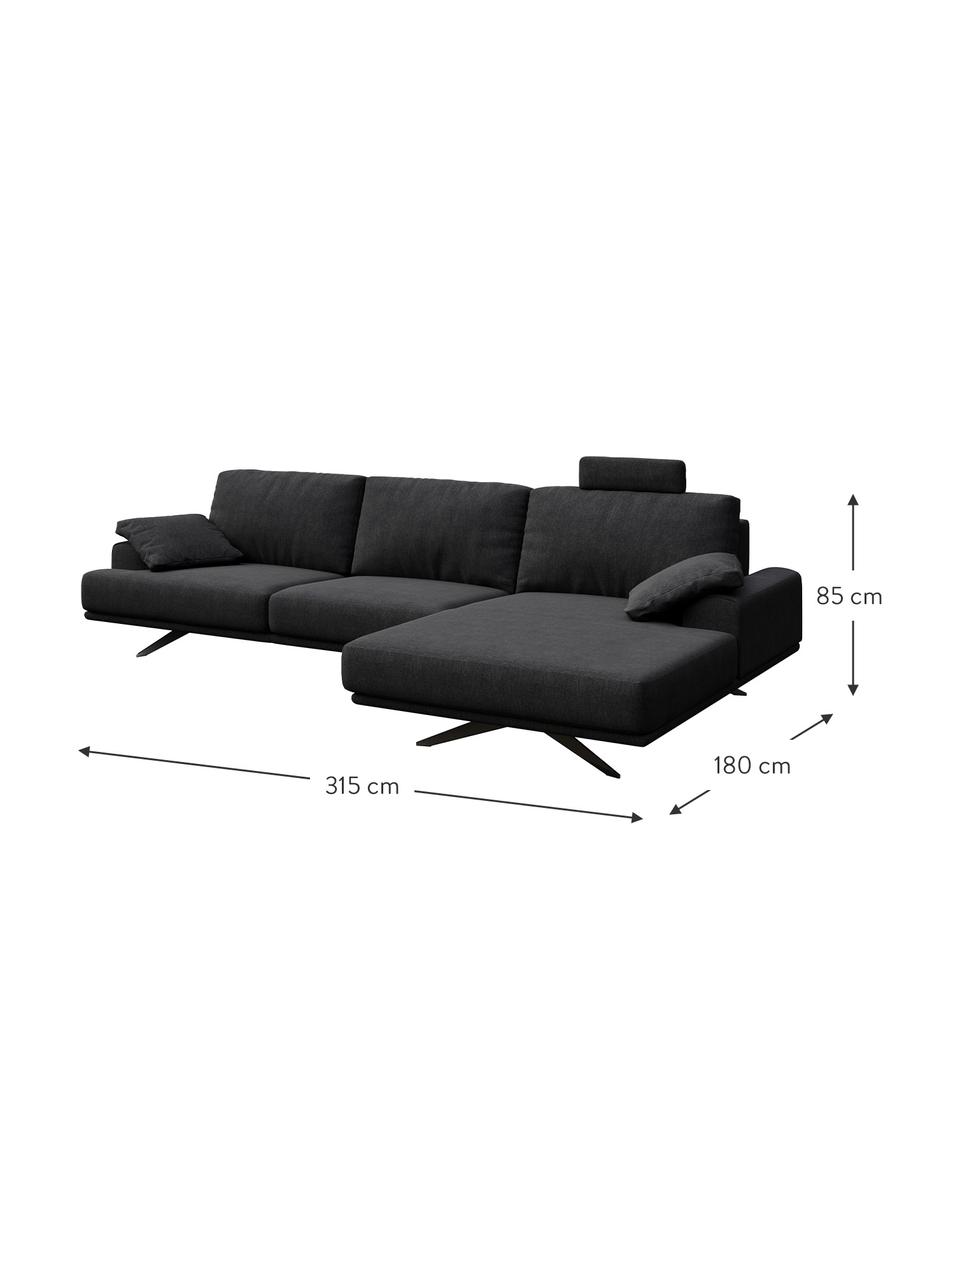 Sofa narożna Prado, Tapicerka: 100% poliester, Nogi: metal lakierowany, Ciemny szary, S 315 x G 180 cm